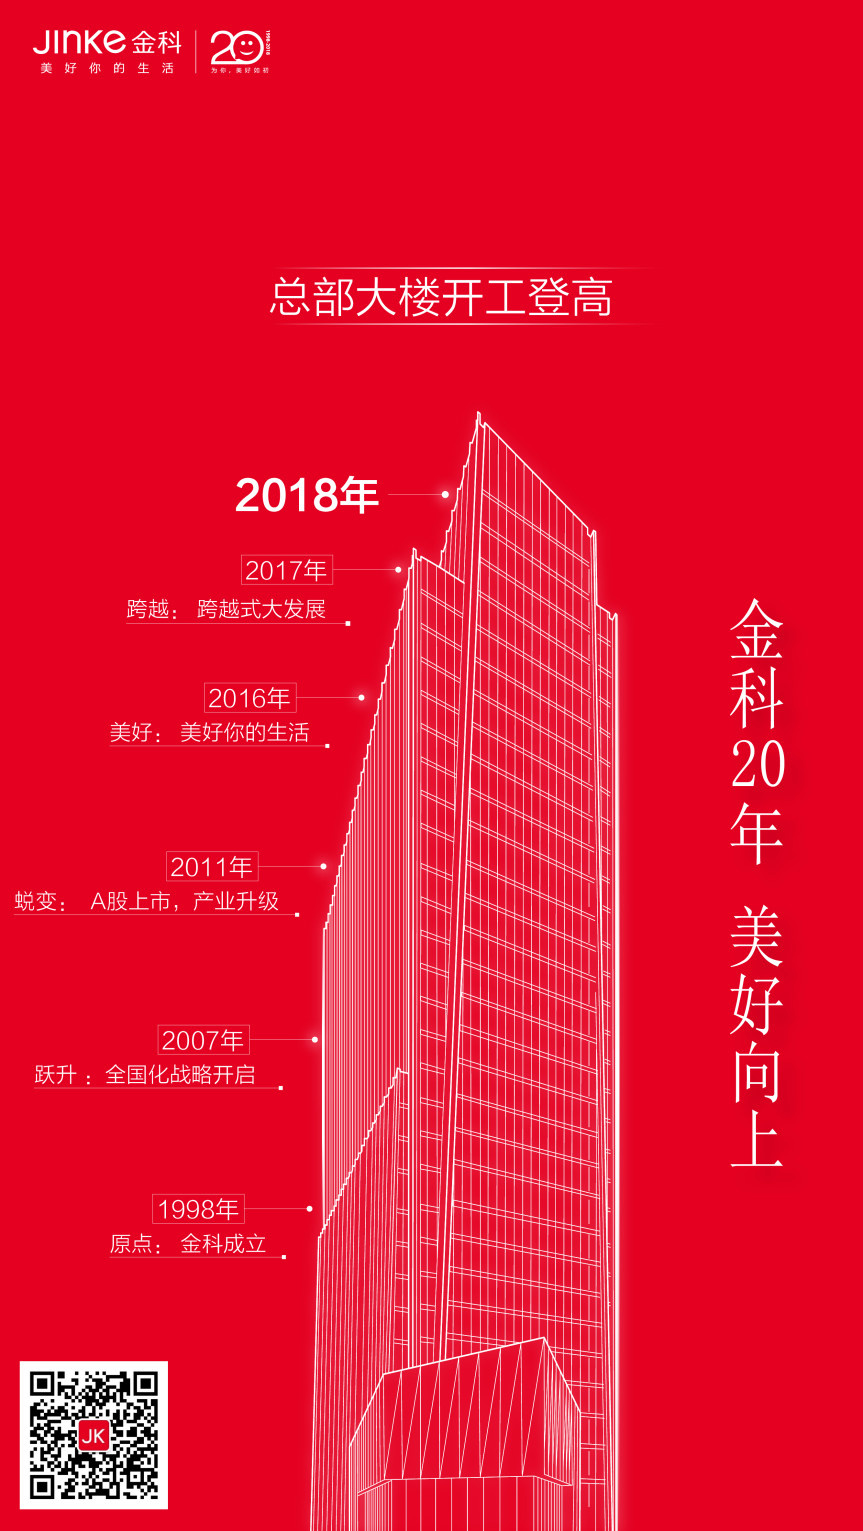 金科20周年 | 总部大楼开工登高 开启美好新征程-中国网地产